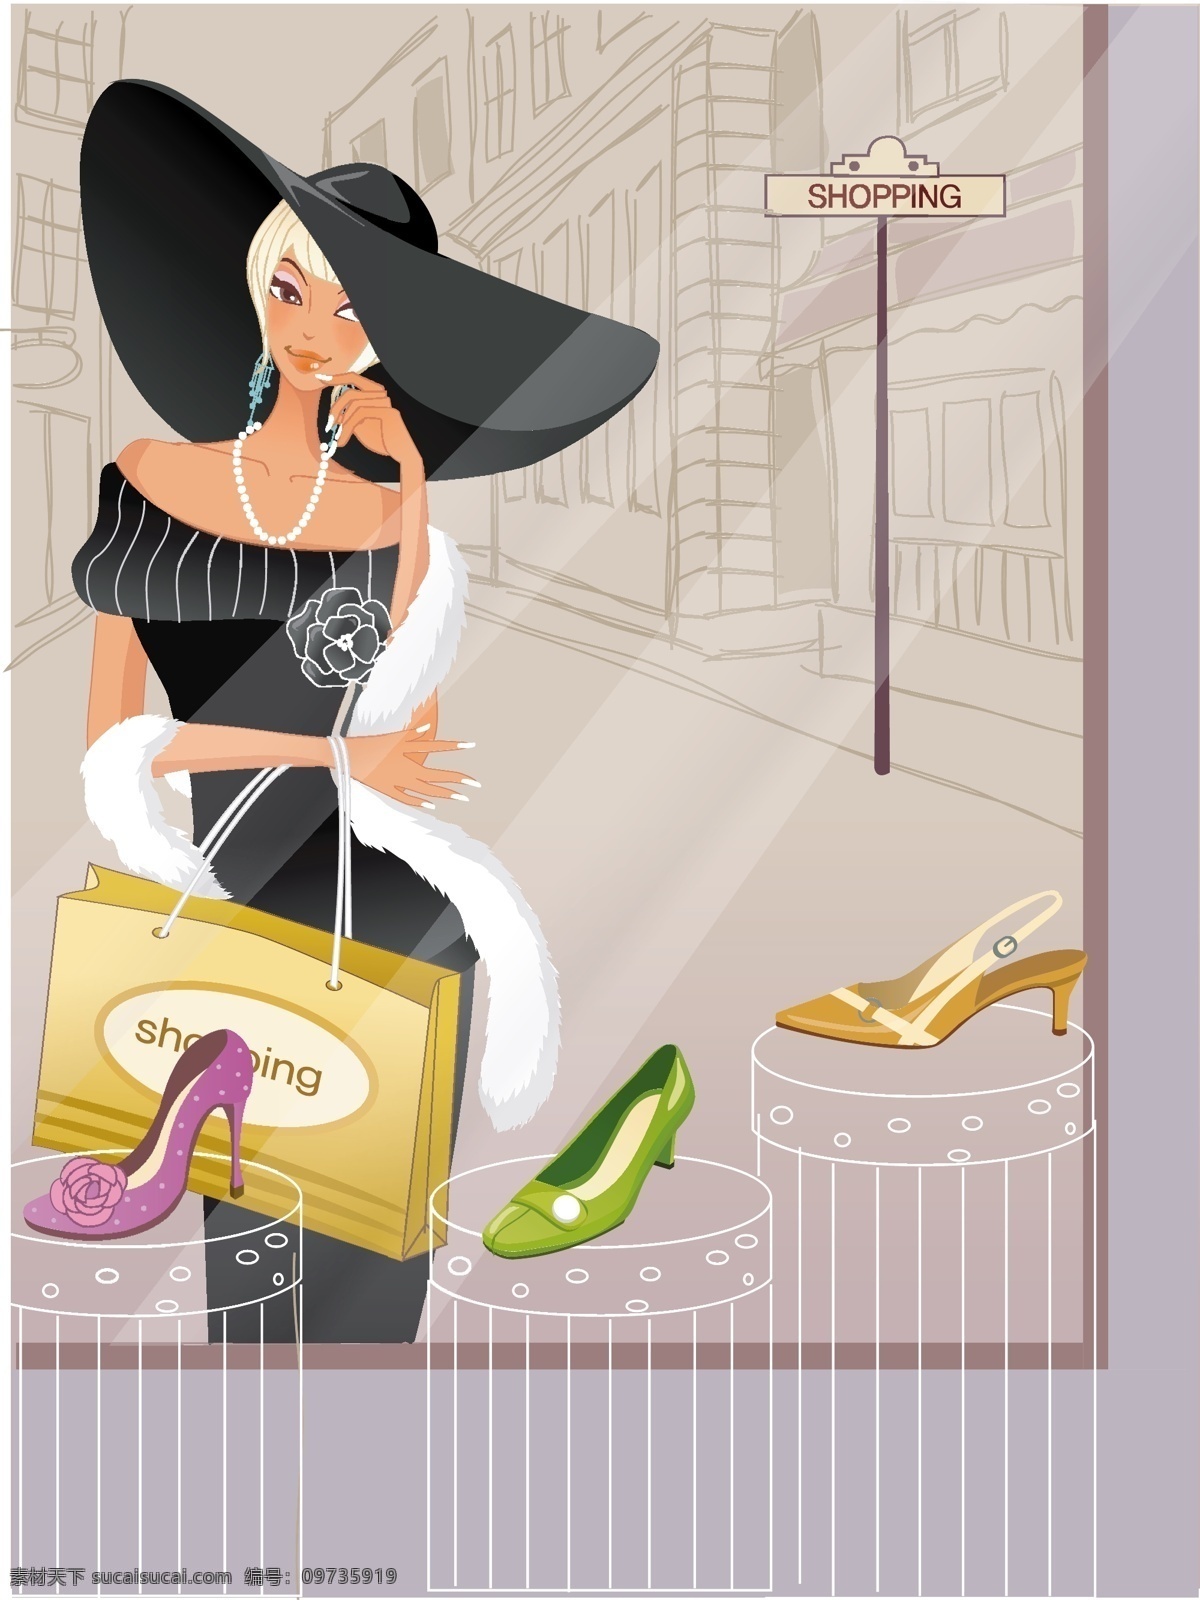 时尚 女性 购物 eps格式 背景 高跟鞋 帽子 背景女性 矢量图 矢量人物